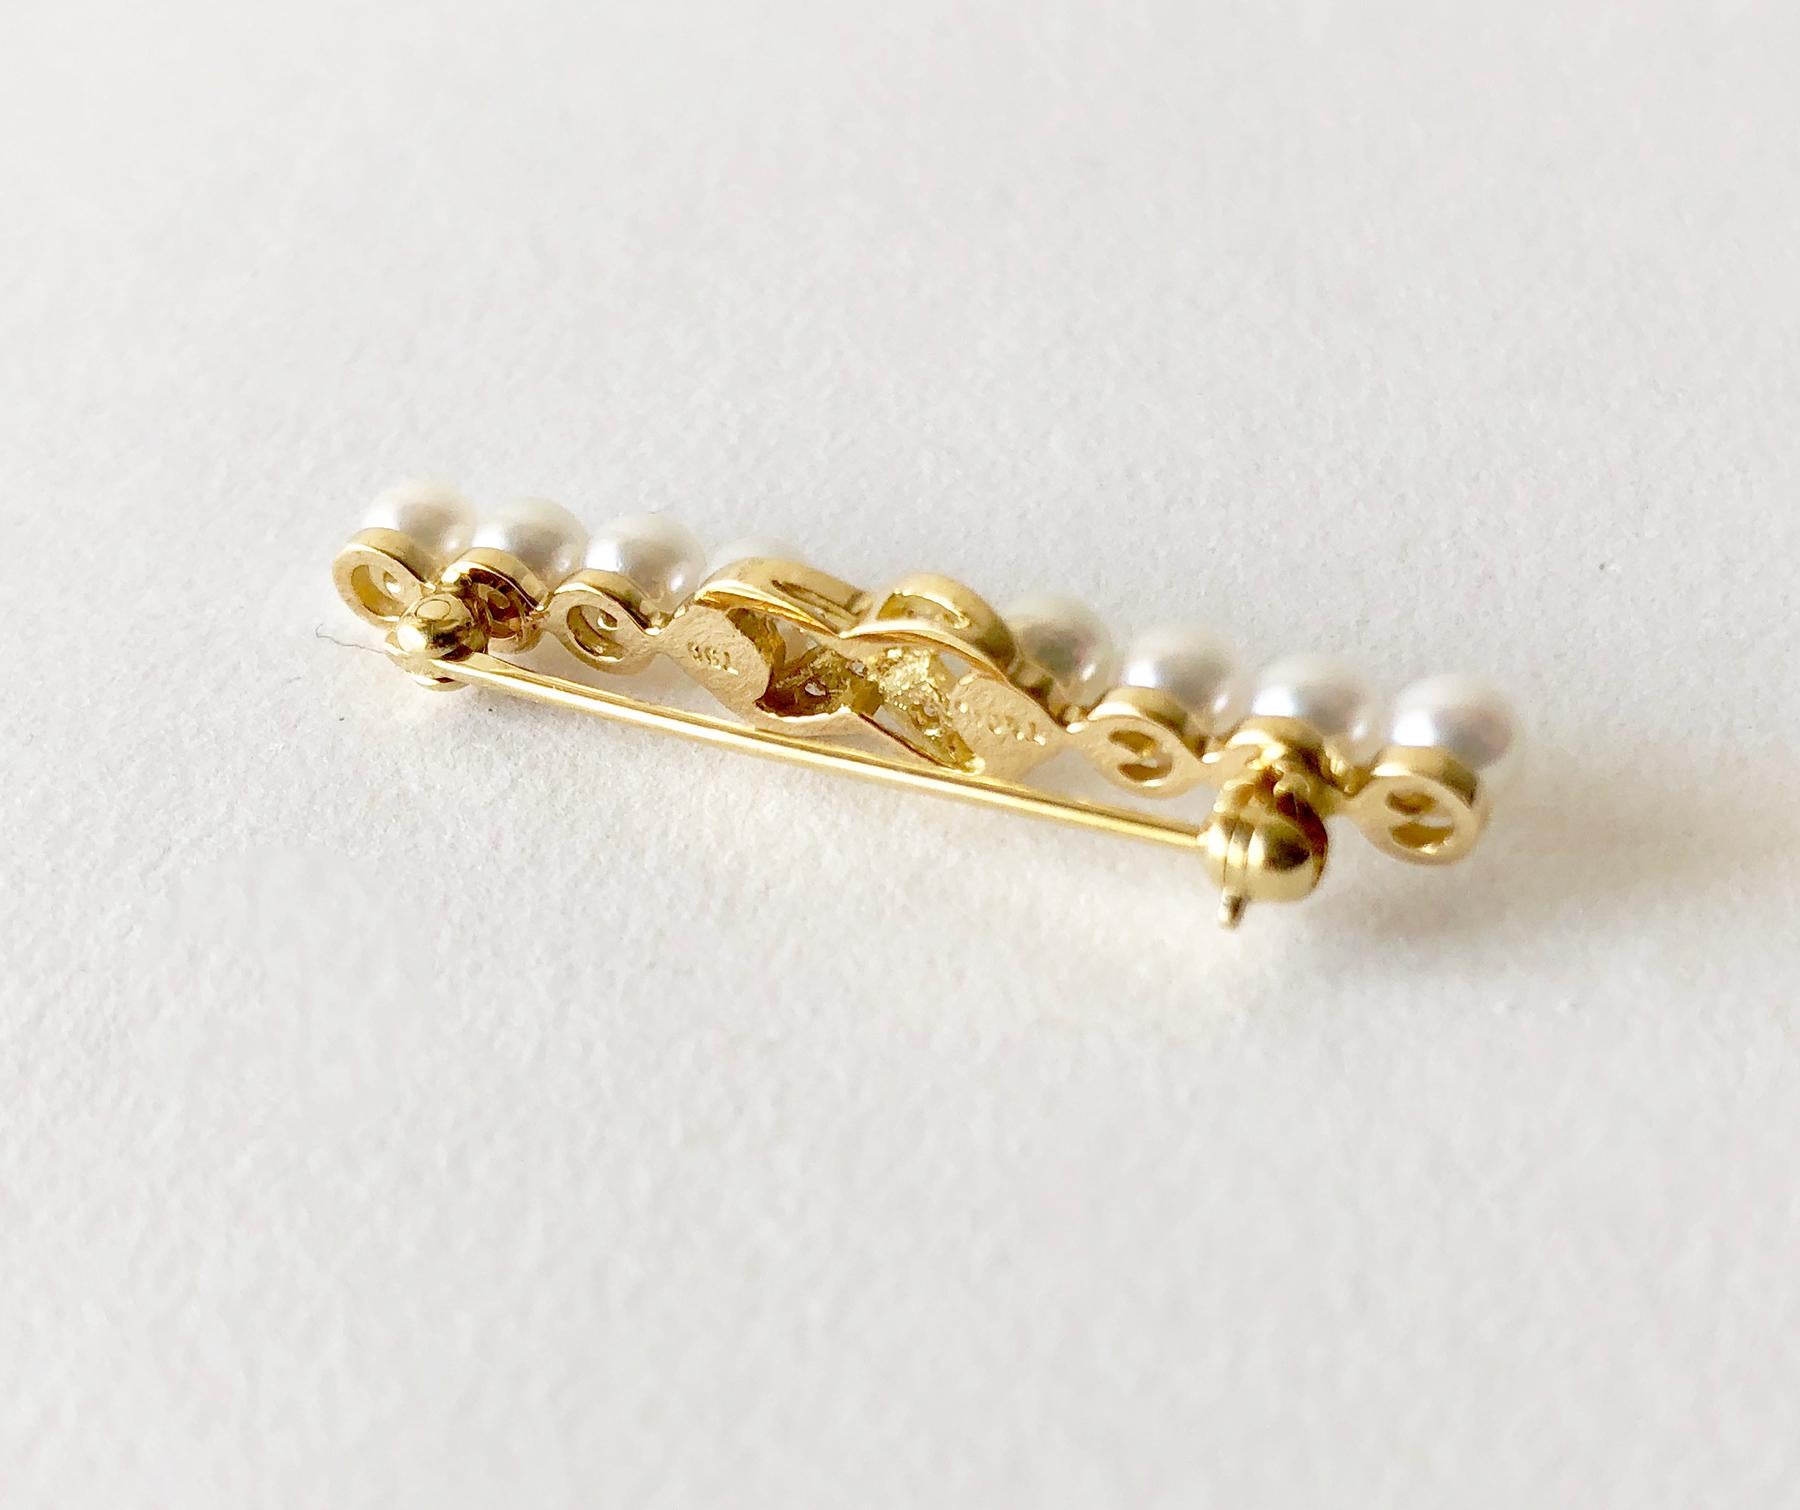 Uncut Tiffany & Co. 18 Karat Gold Diamond Bar Pin Brooch